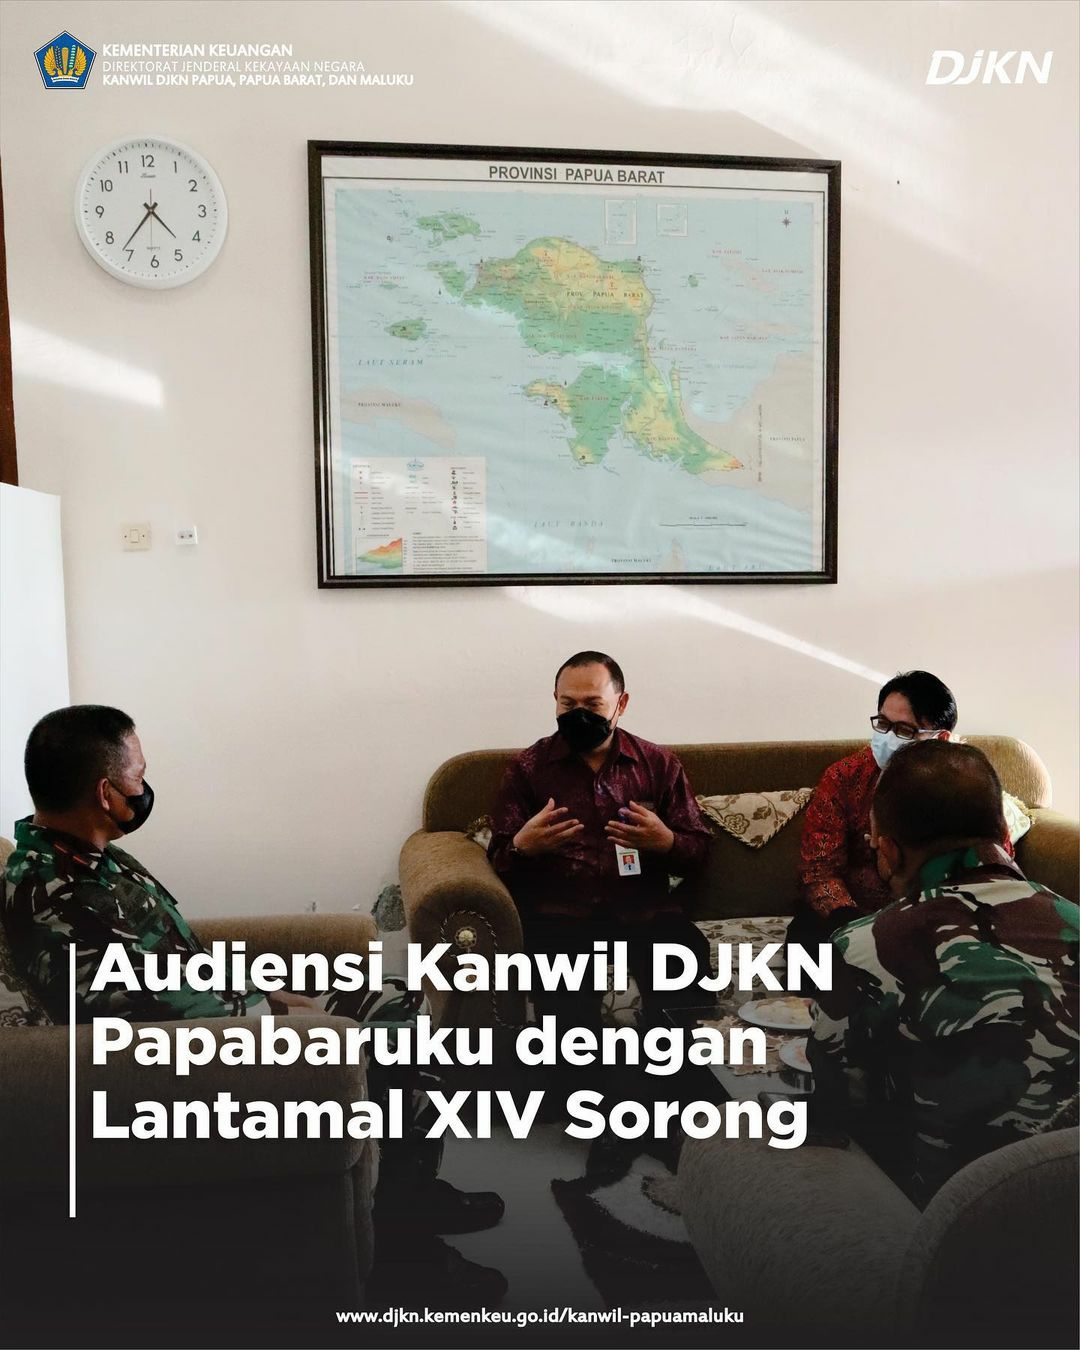 Audiensi Kanwil DJKN Papabaruku dengan Lantamal XIV Sorong